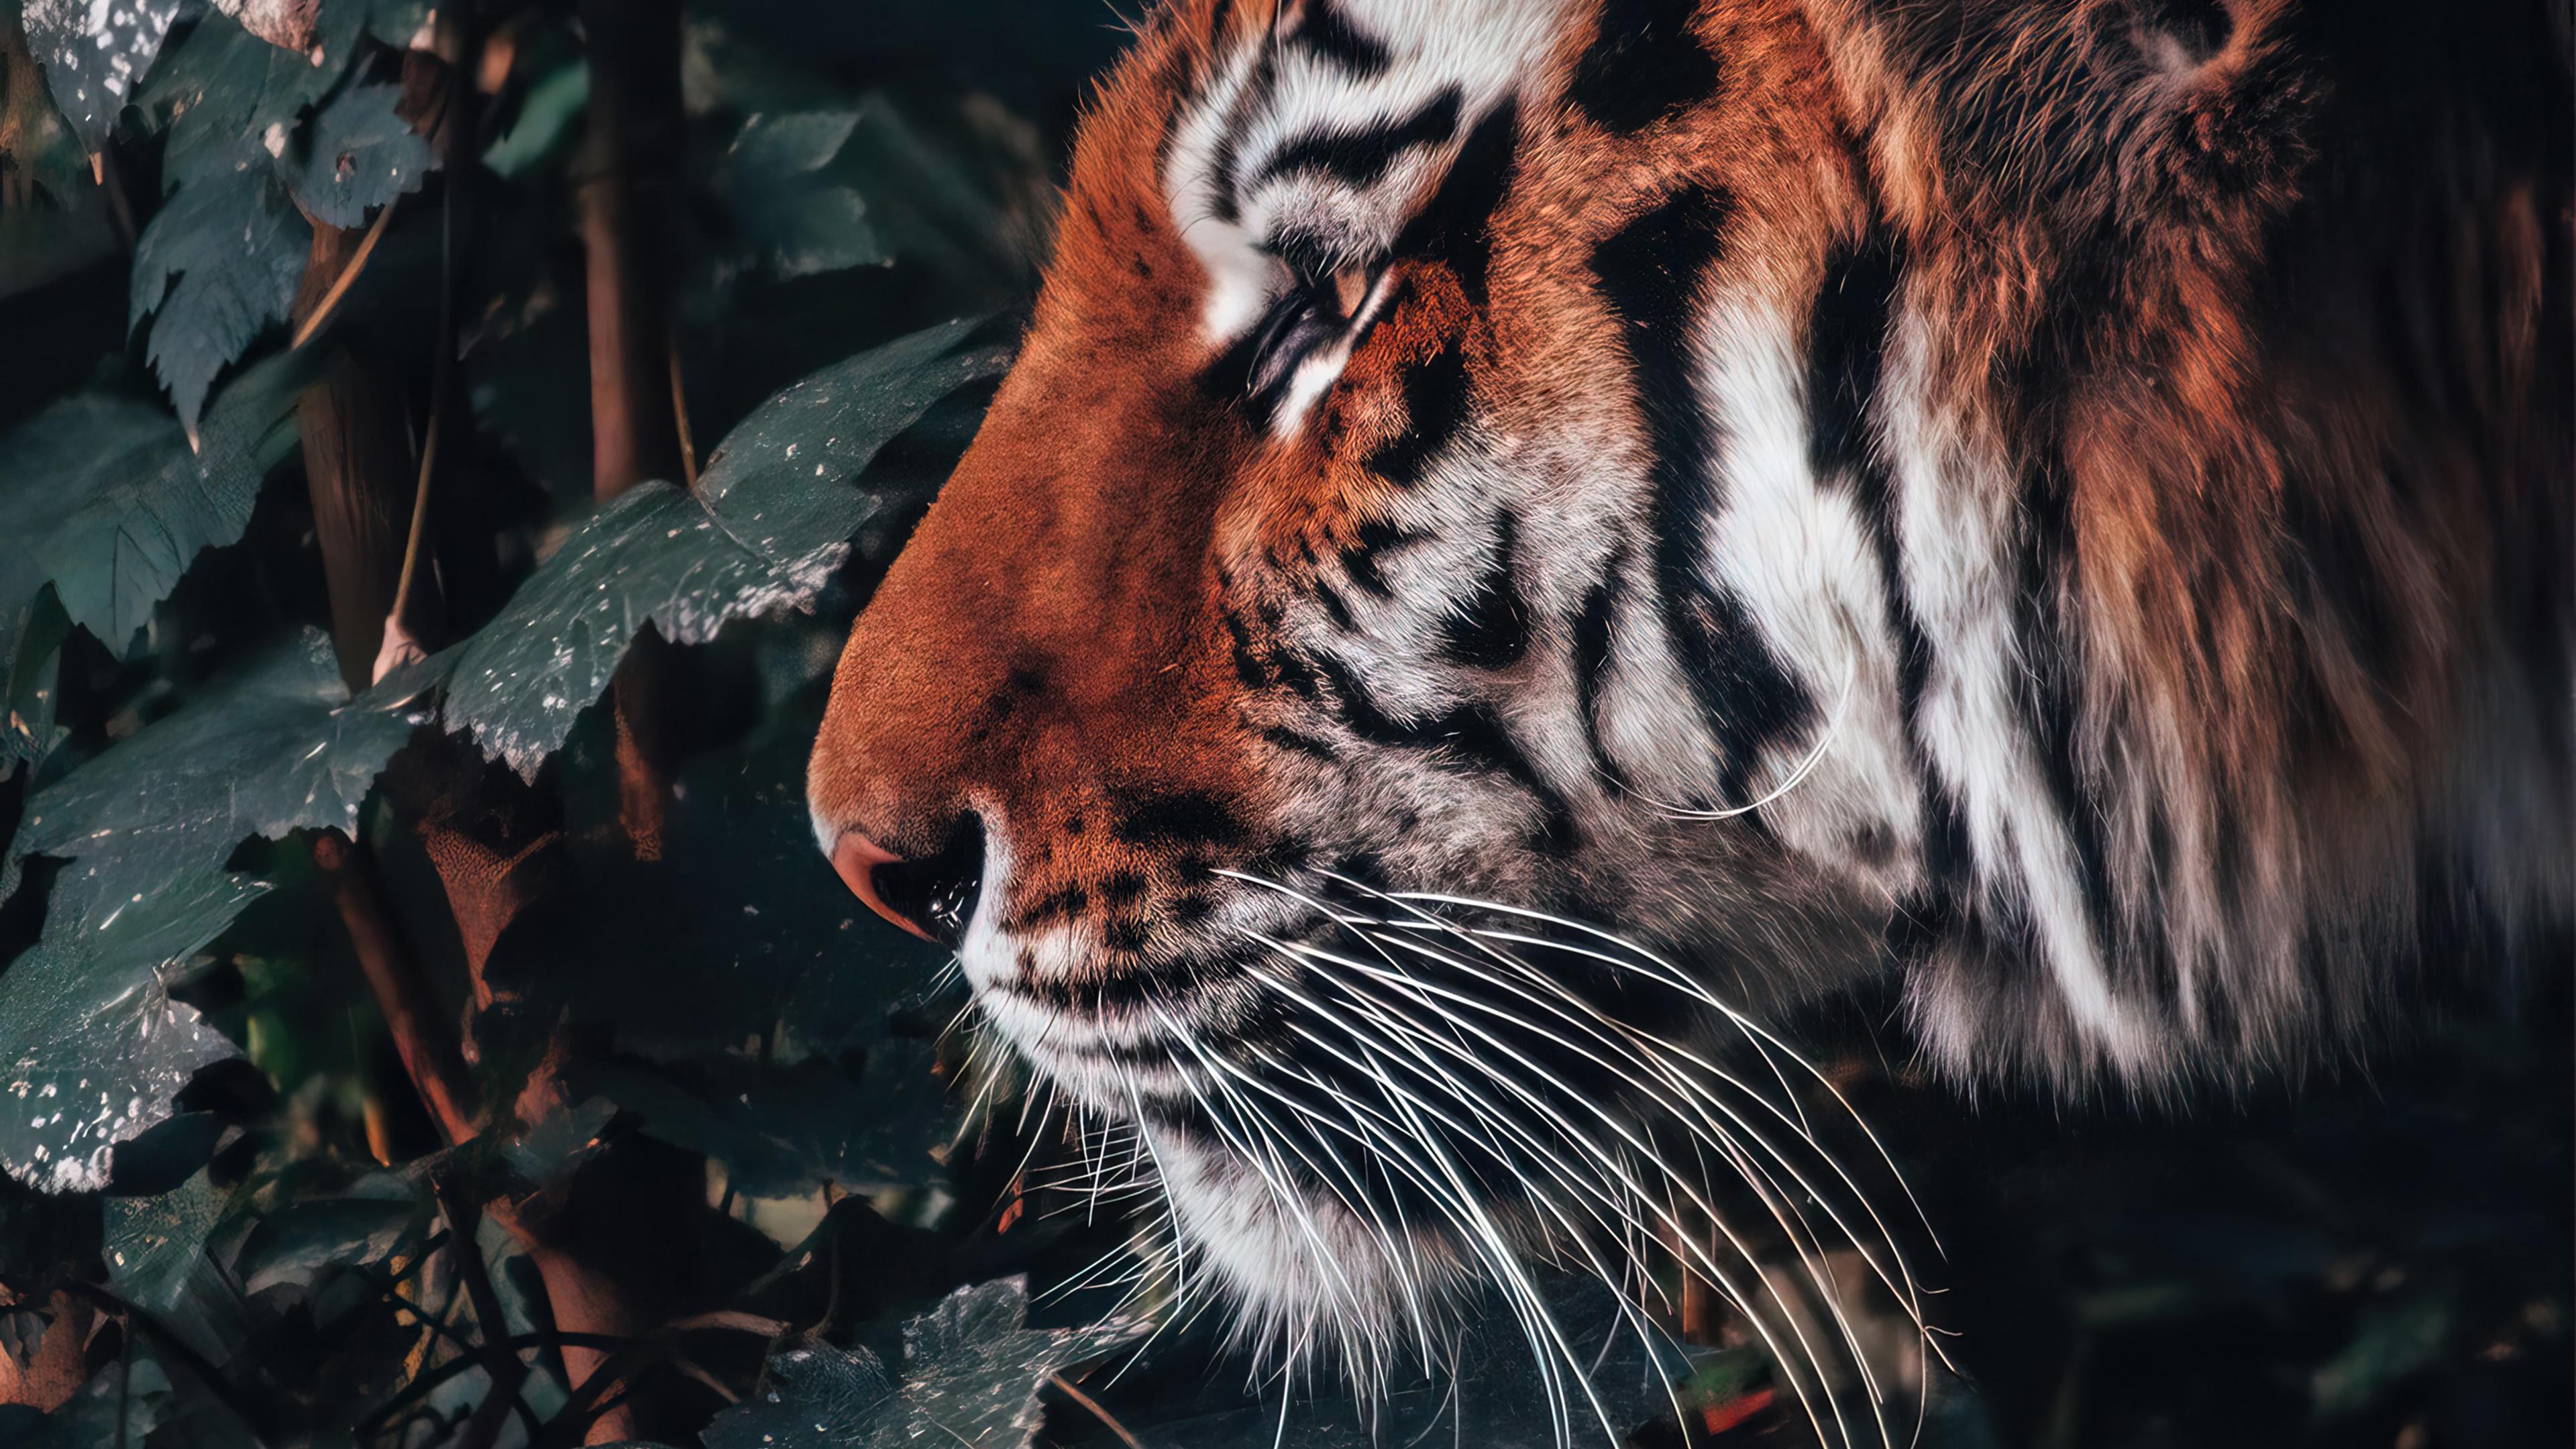 HD wallpaper, Animal, Tiger, 4K